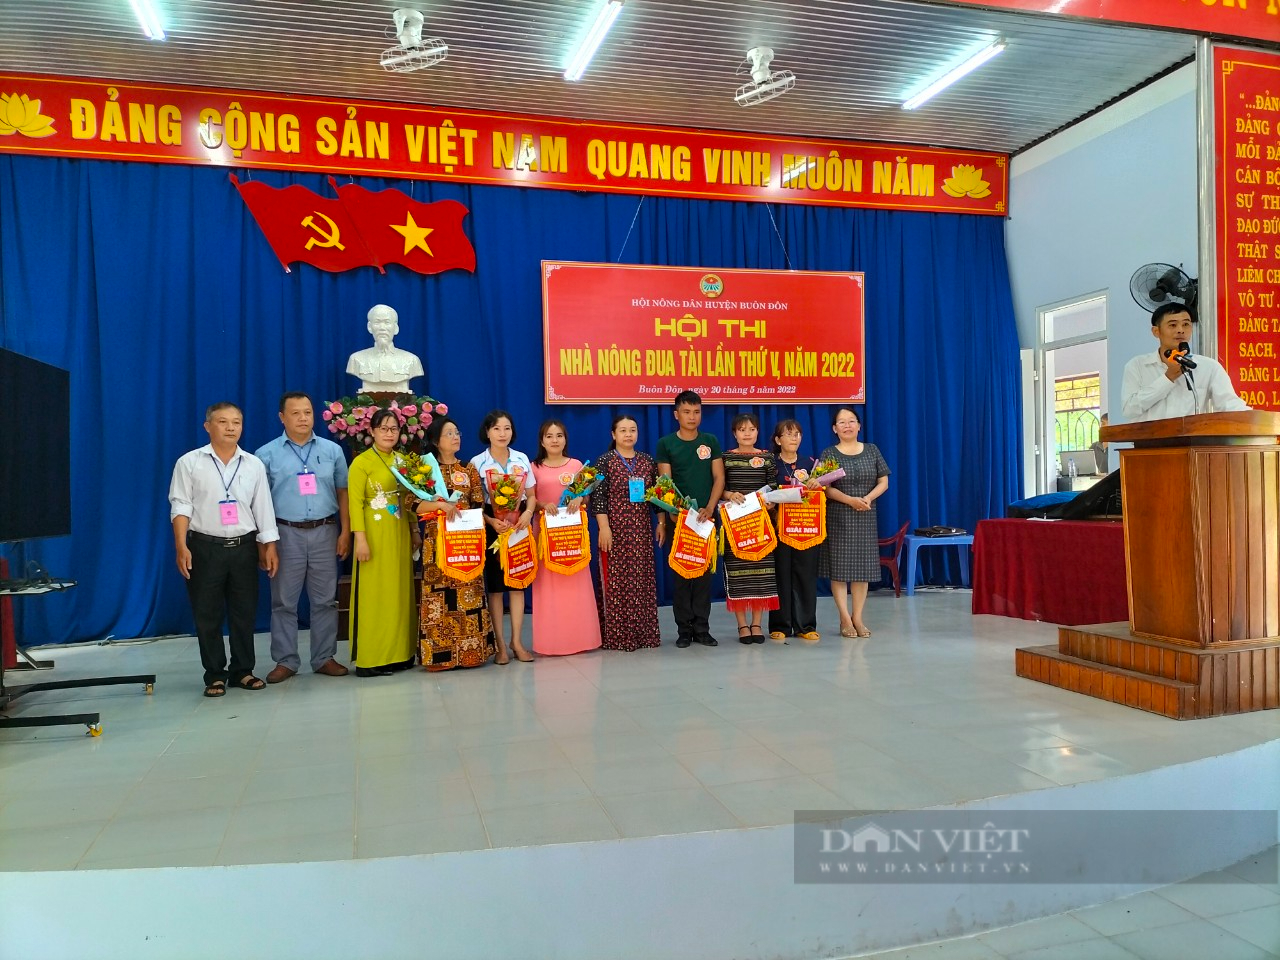 Đắk Lắk: Hội Nội dân huyện Buôn Đôn tổ chức Hội thi nhà nông đua tài năm 2022 - Ảnh 1.